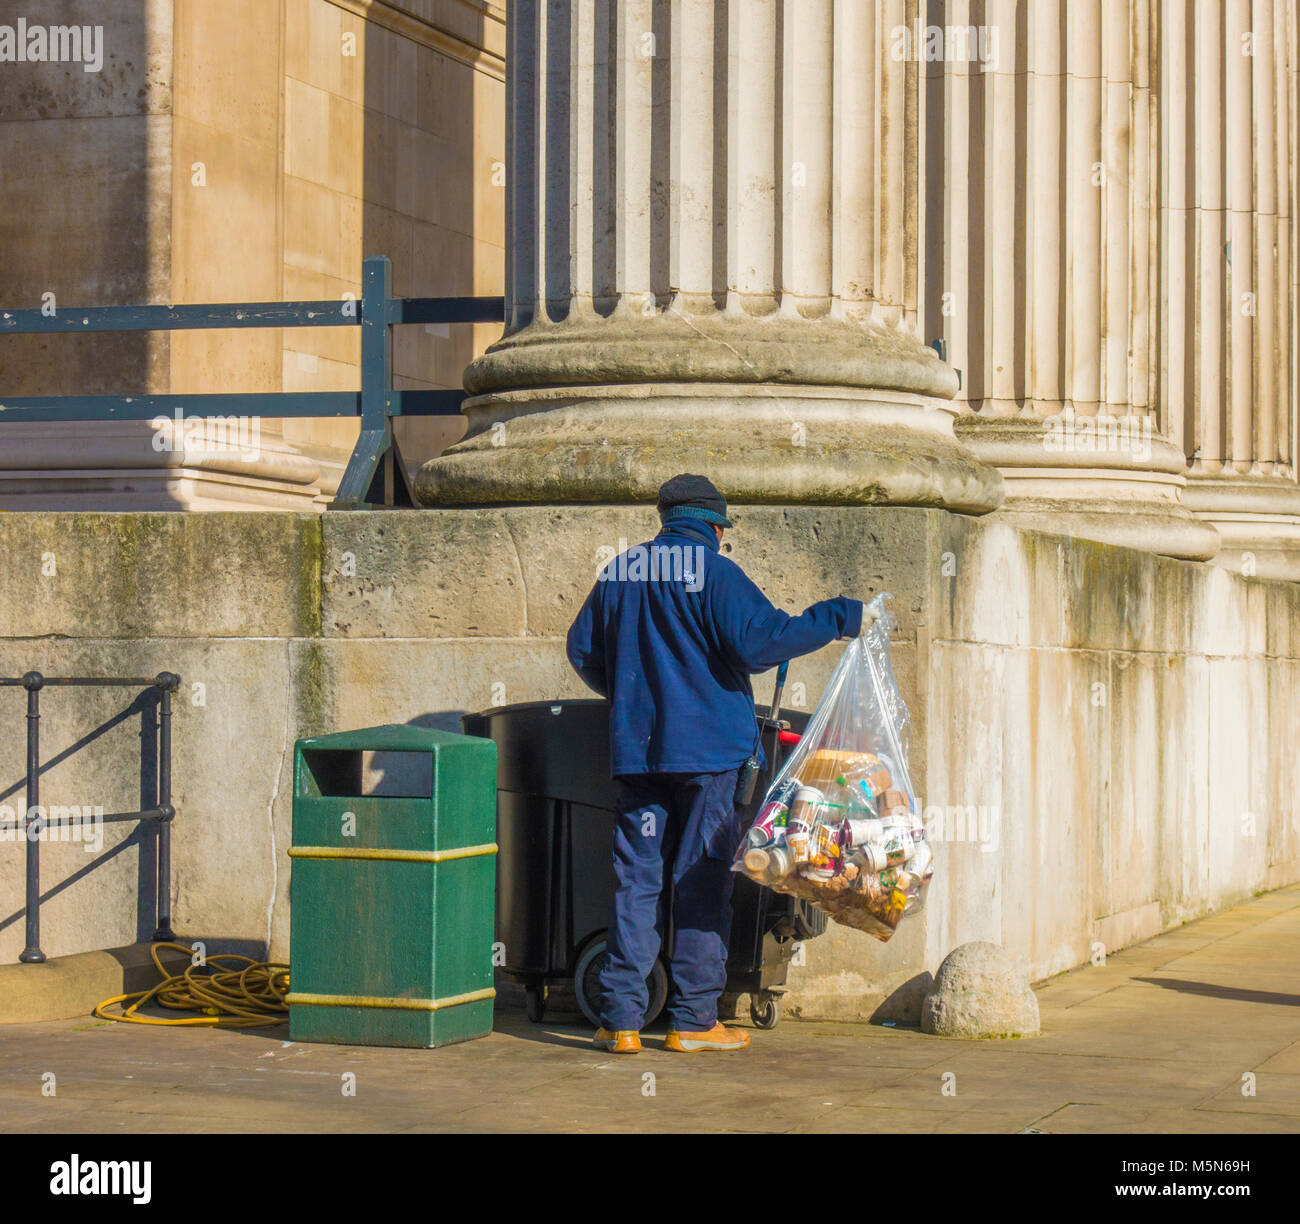 Lavoratore di Londra al di fuori del British Museum, il sollevamento di un contenitore pieno di sacchetto principalmente tazze monouso, per mettere in un recipiente con ruote. Londra, Inghilterra, Regno Unito. Foto Stock